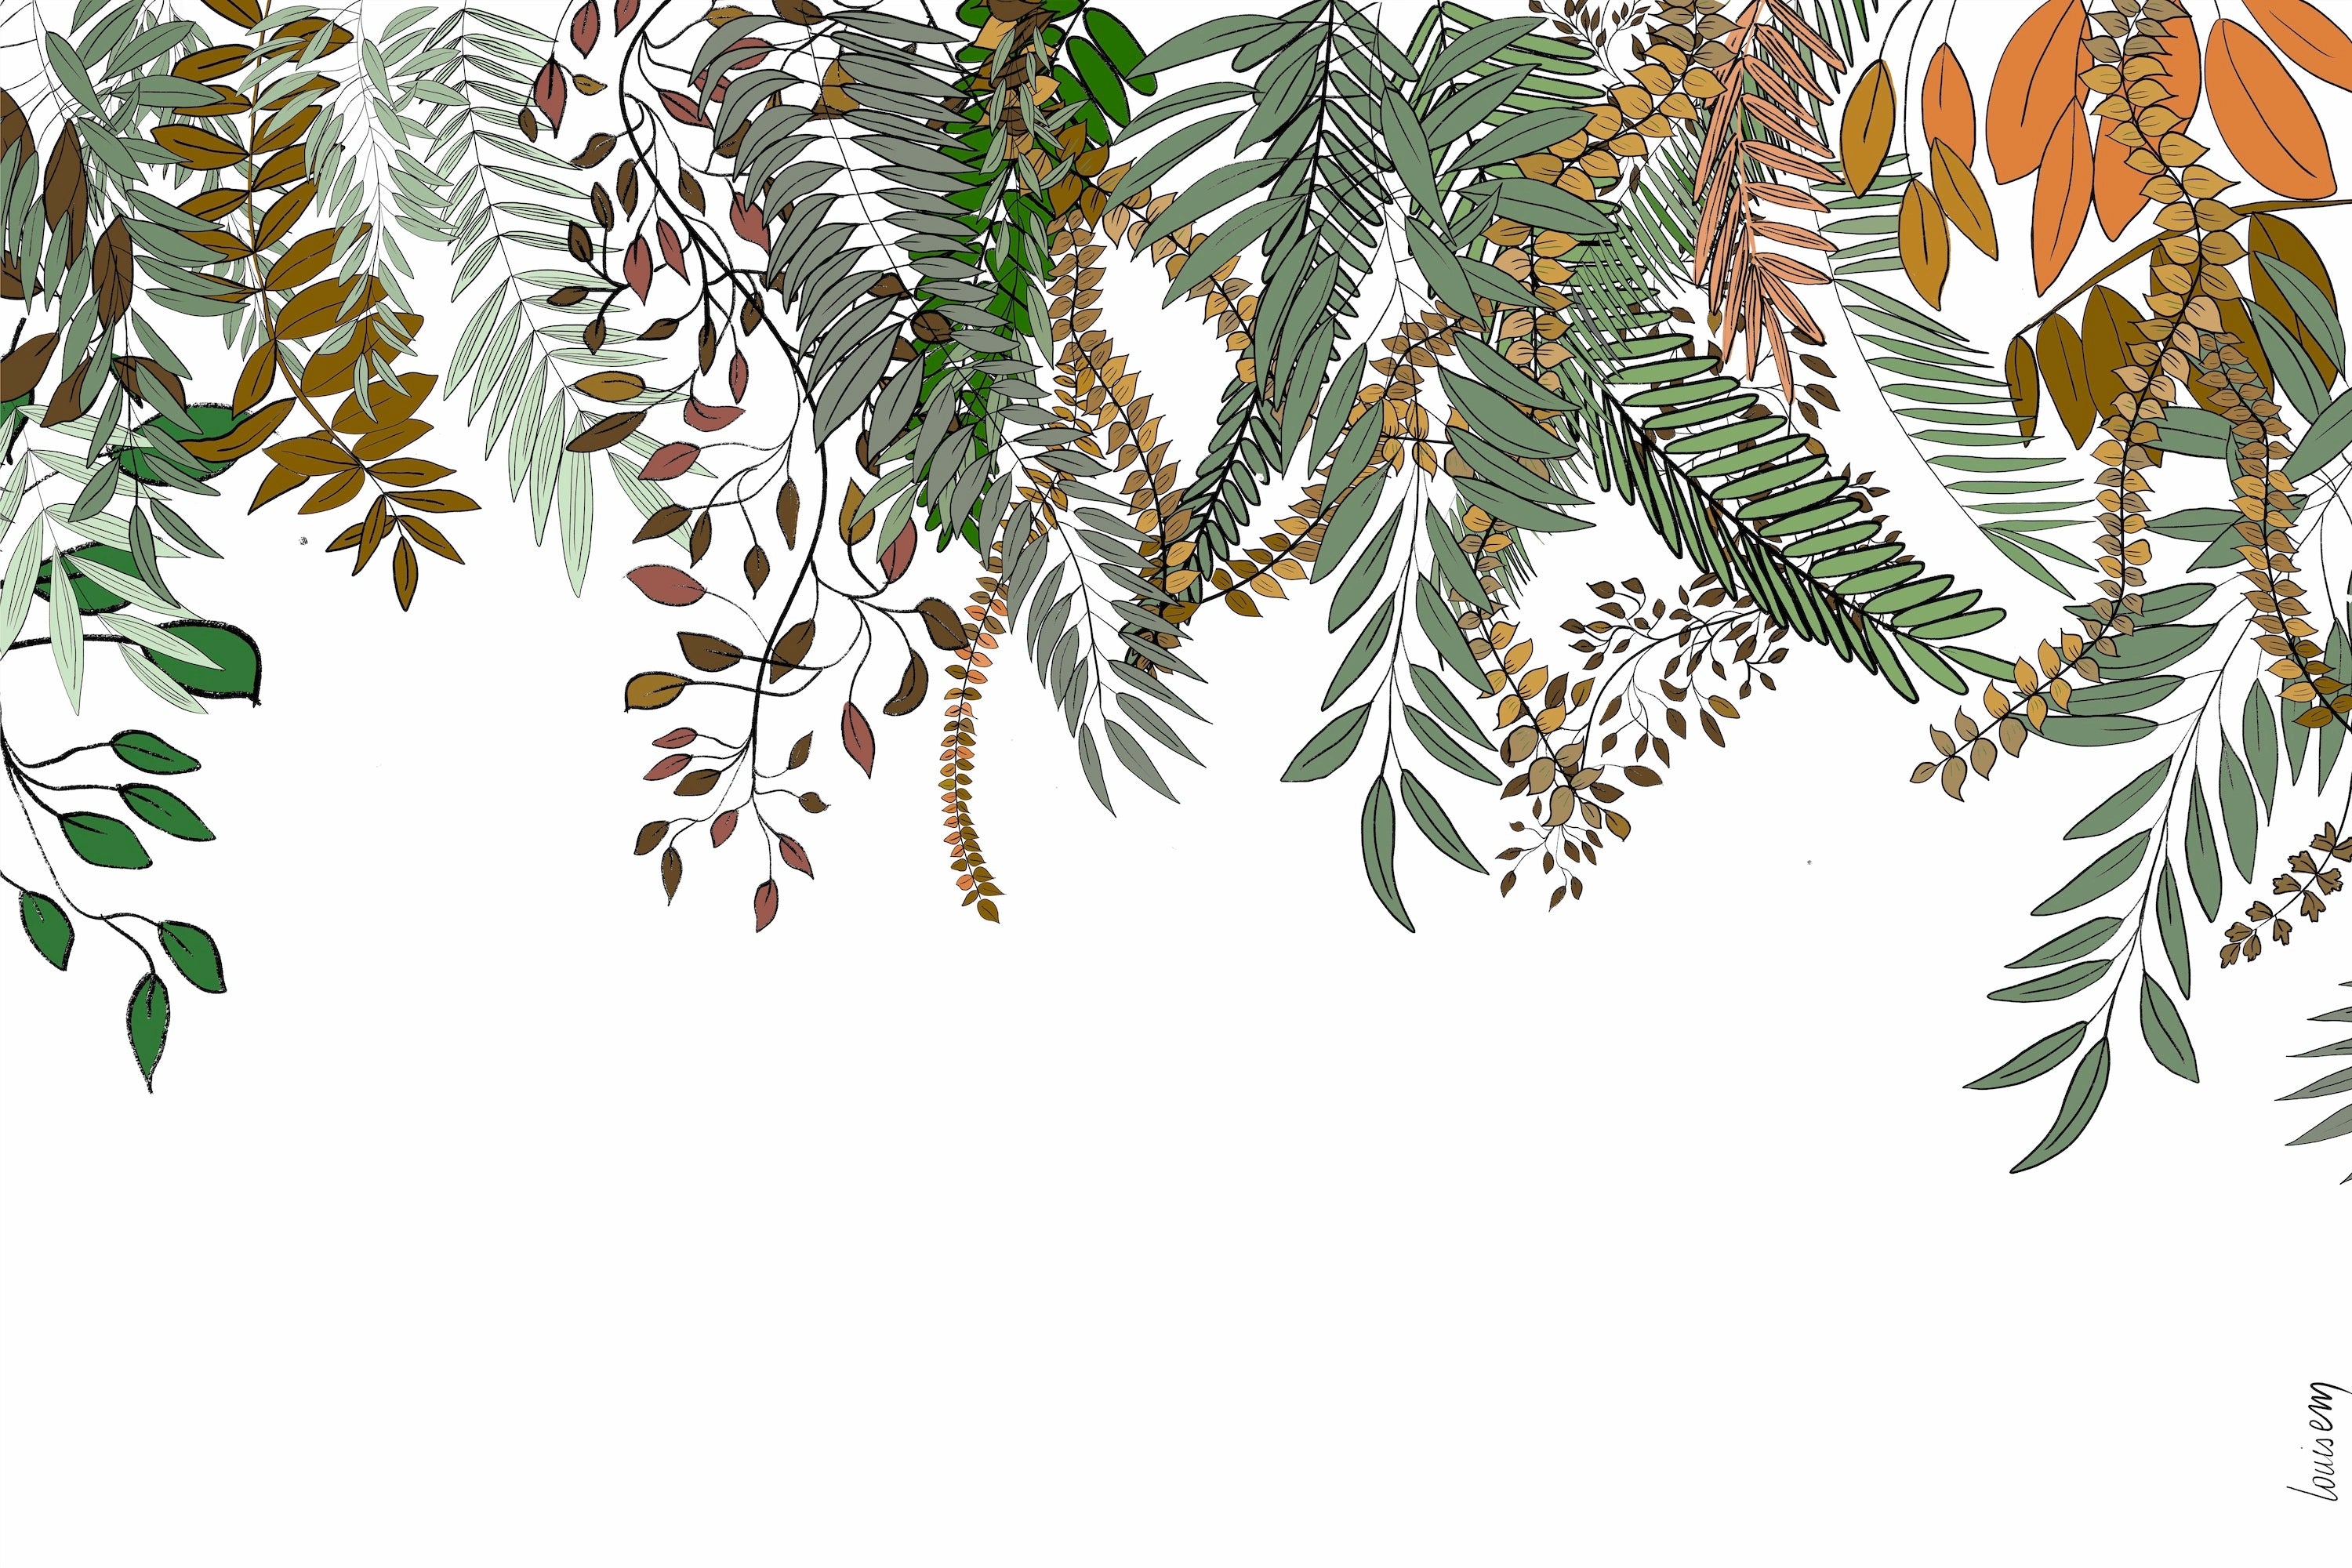 Papier peint représentant des plantes grimpantes aux couleurs automnales, avec des feuilles passant du vert au rouge et au doré, évoquant une atmosphère chaleureuse et saisonnière.